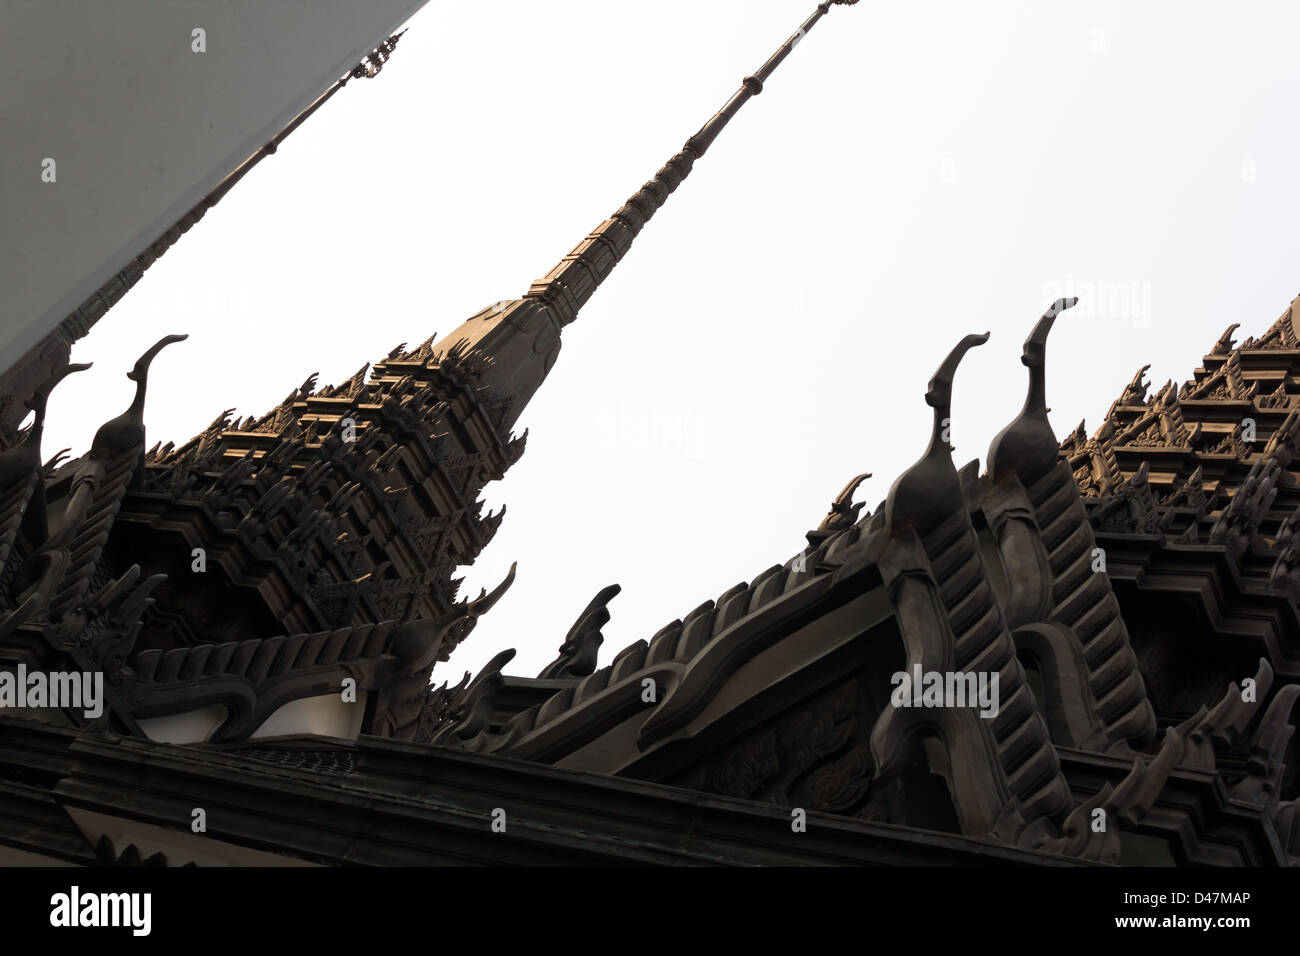 Iron temple Loha Prasat in Wat Ratchanatdaram Worawihan, Bangkok, Thailand Stock Photo